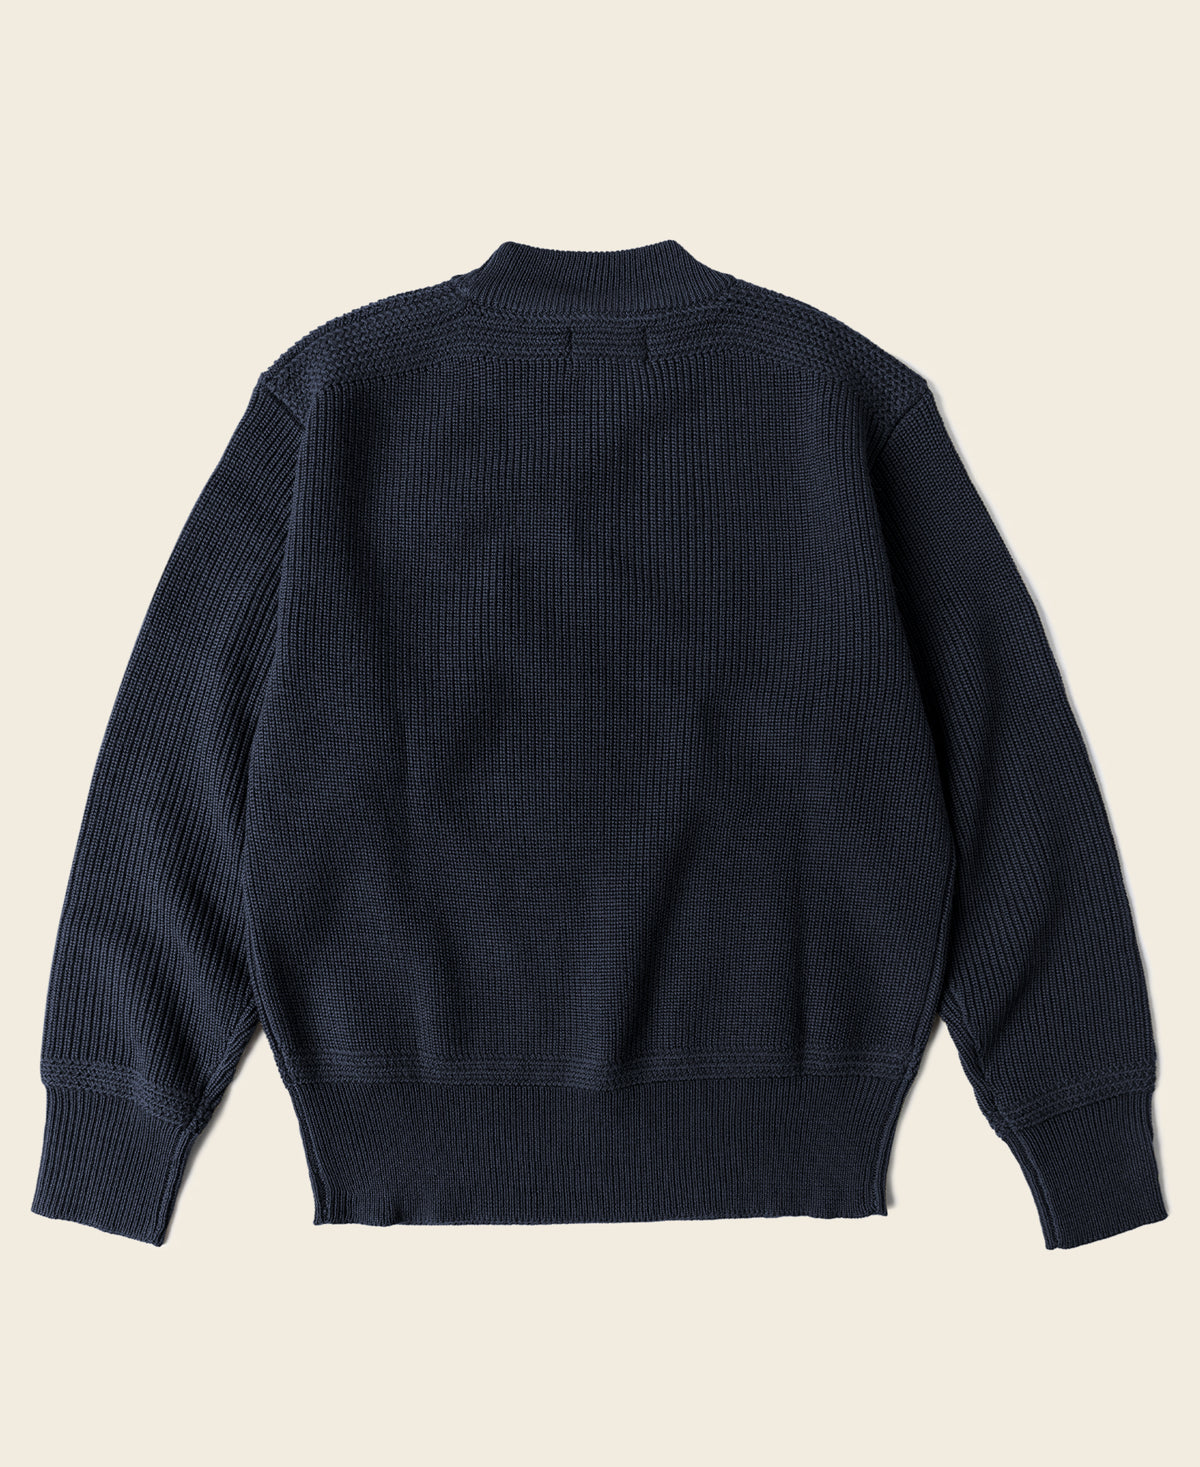 Pre-War Model USN Woolen Sweater - Navy